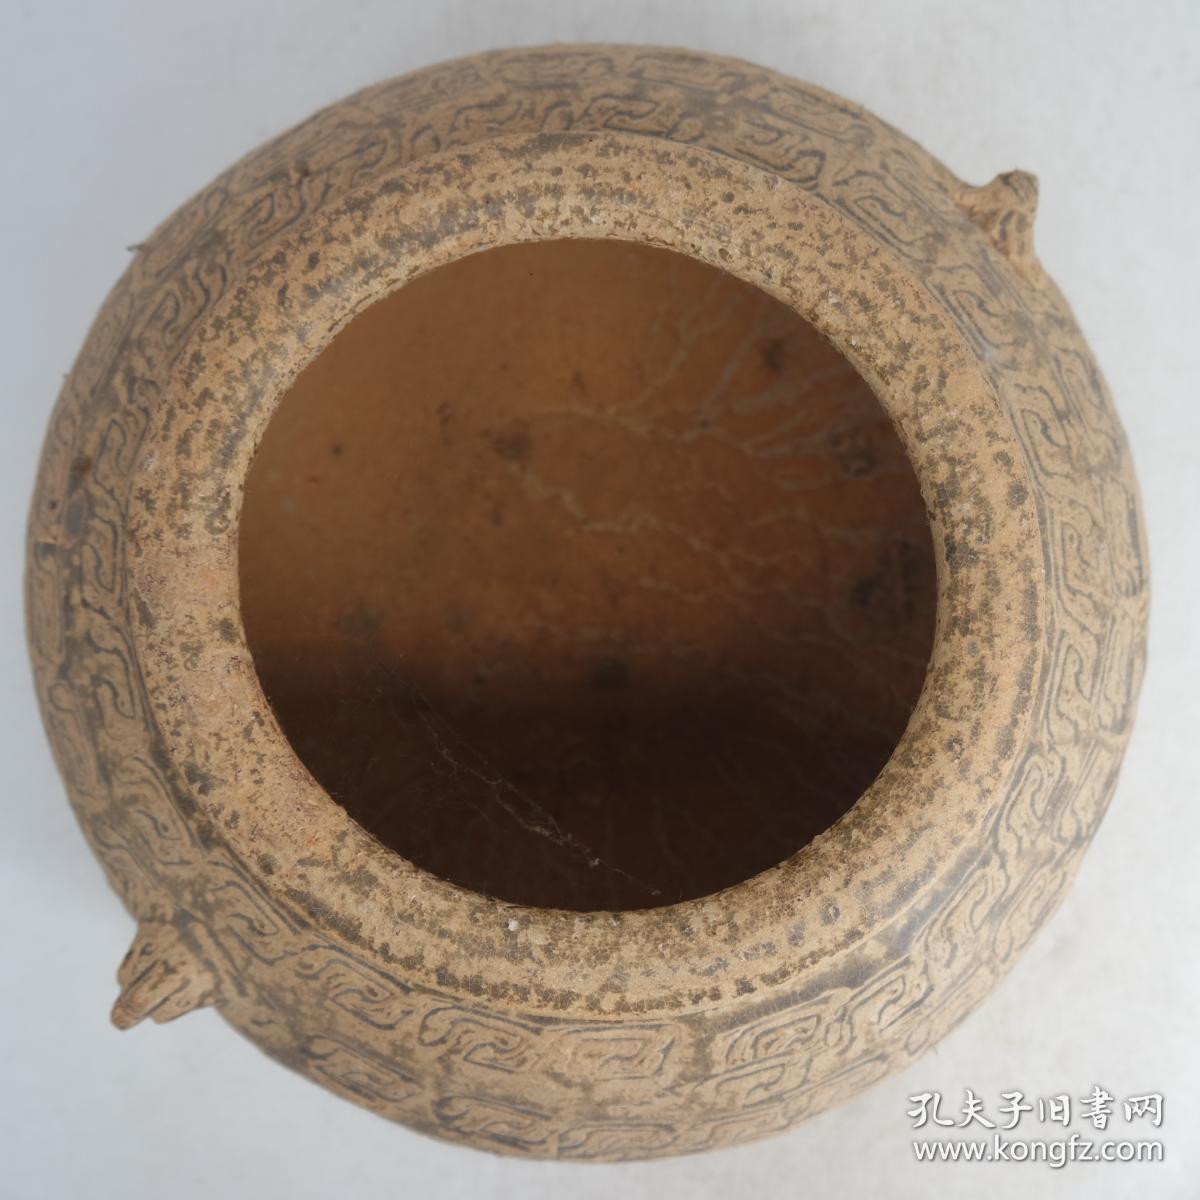 旋涡纹瓮-原始彩陶-图片